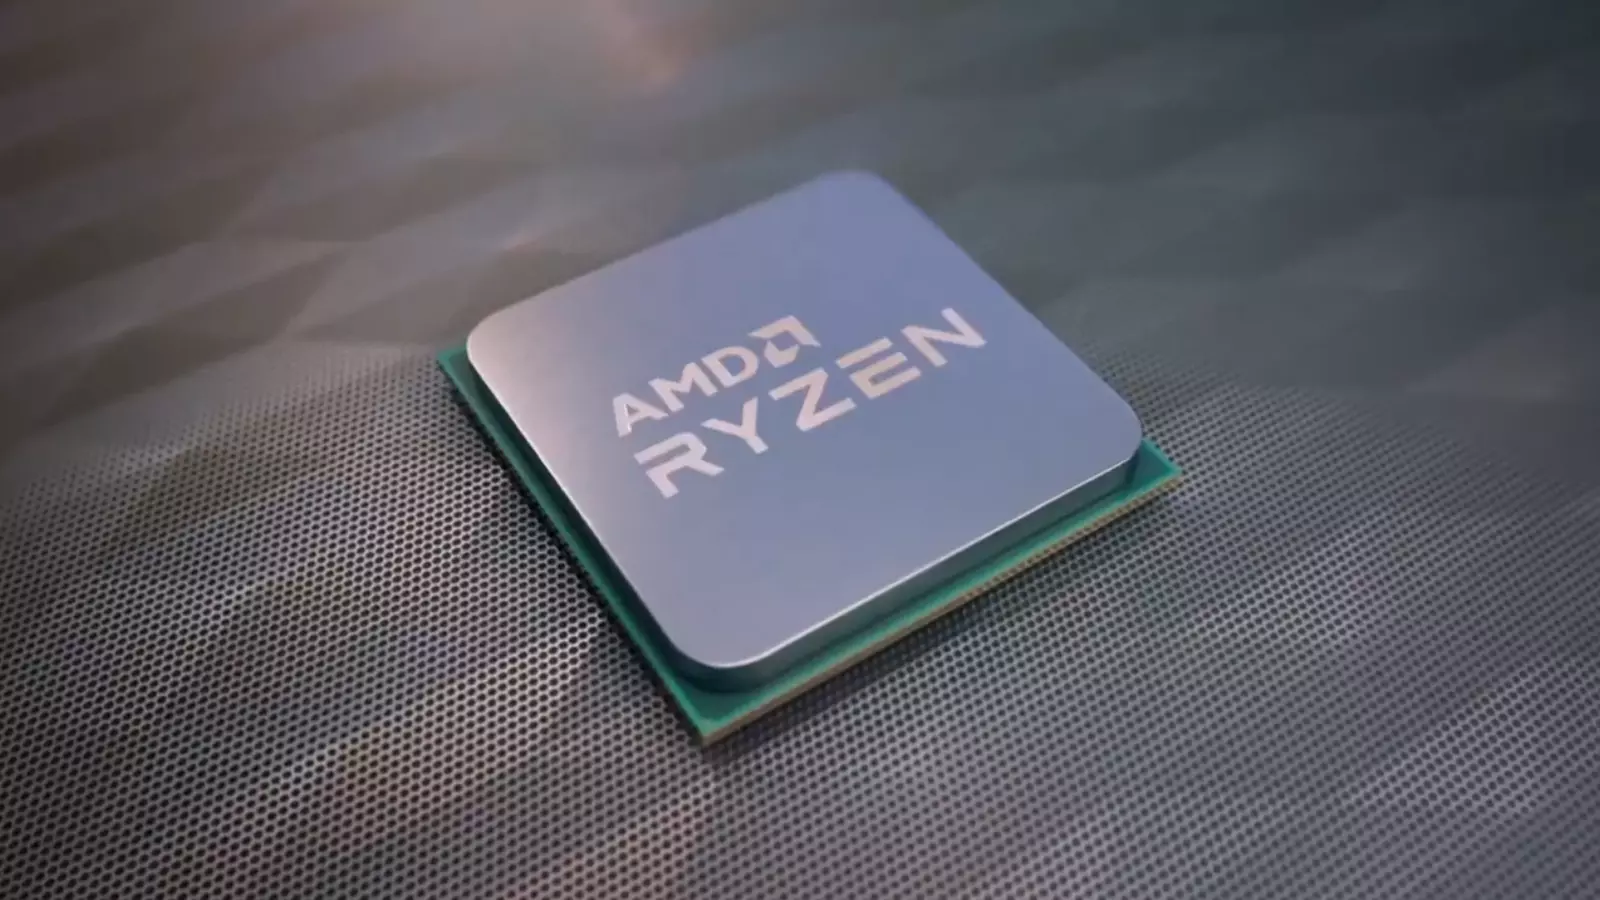 AMD Ryzen 5000G series CPUs